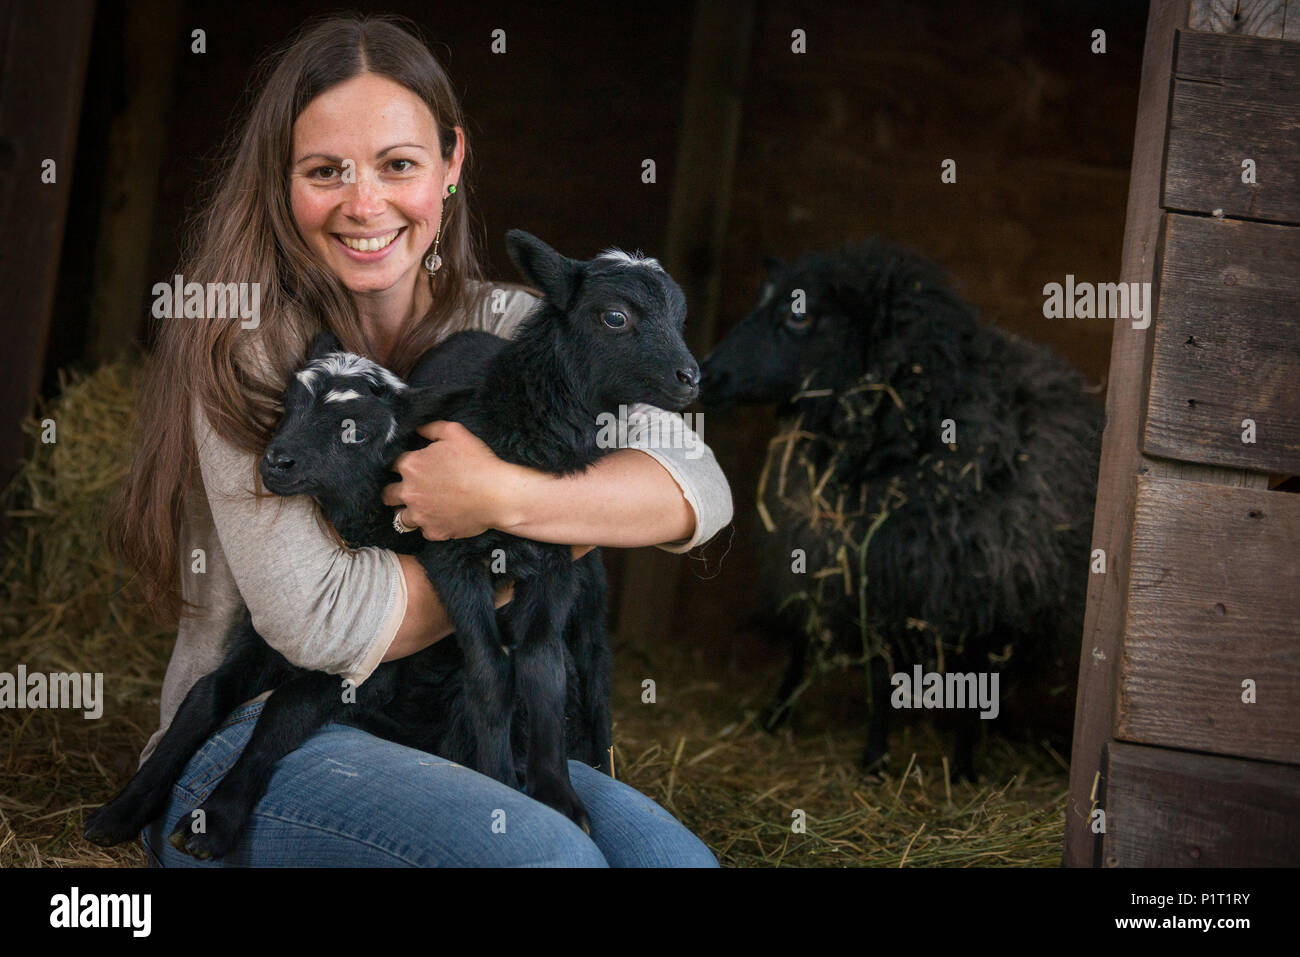 Ritratto di una donna attraente con baby pecora nera in un ambiente rurale. Foto Stock